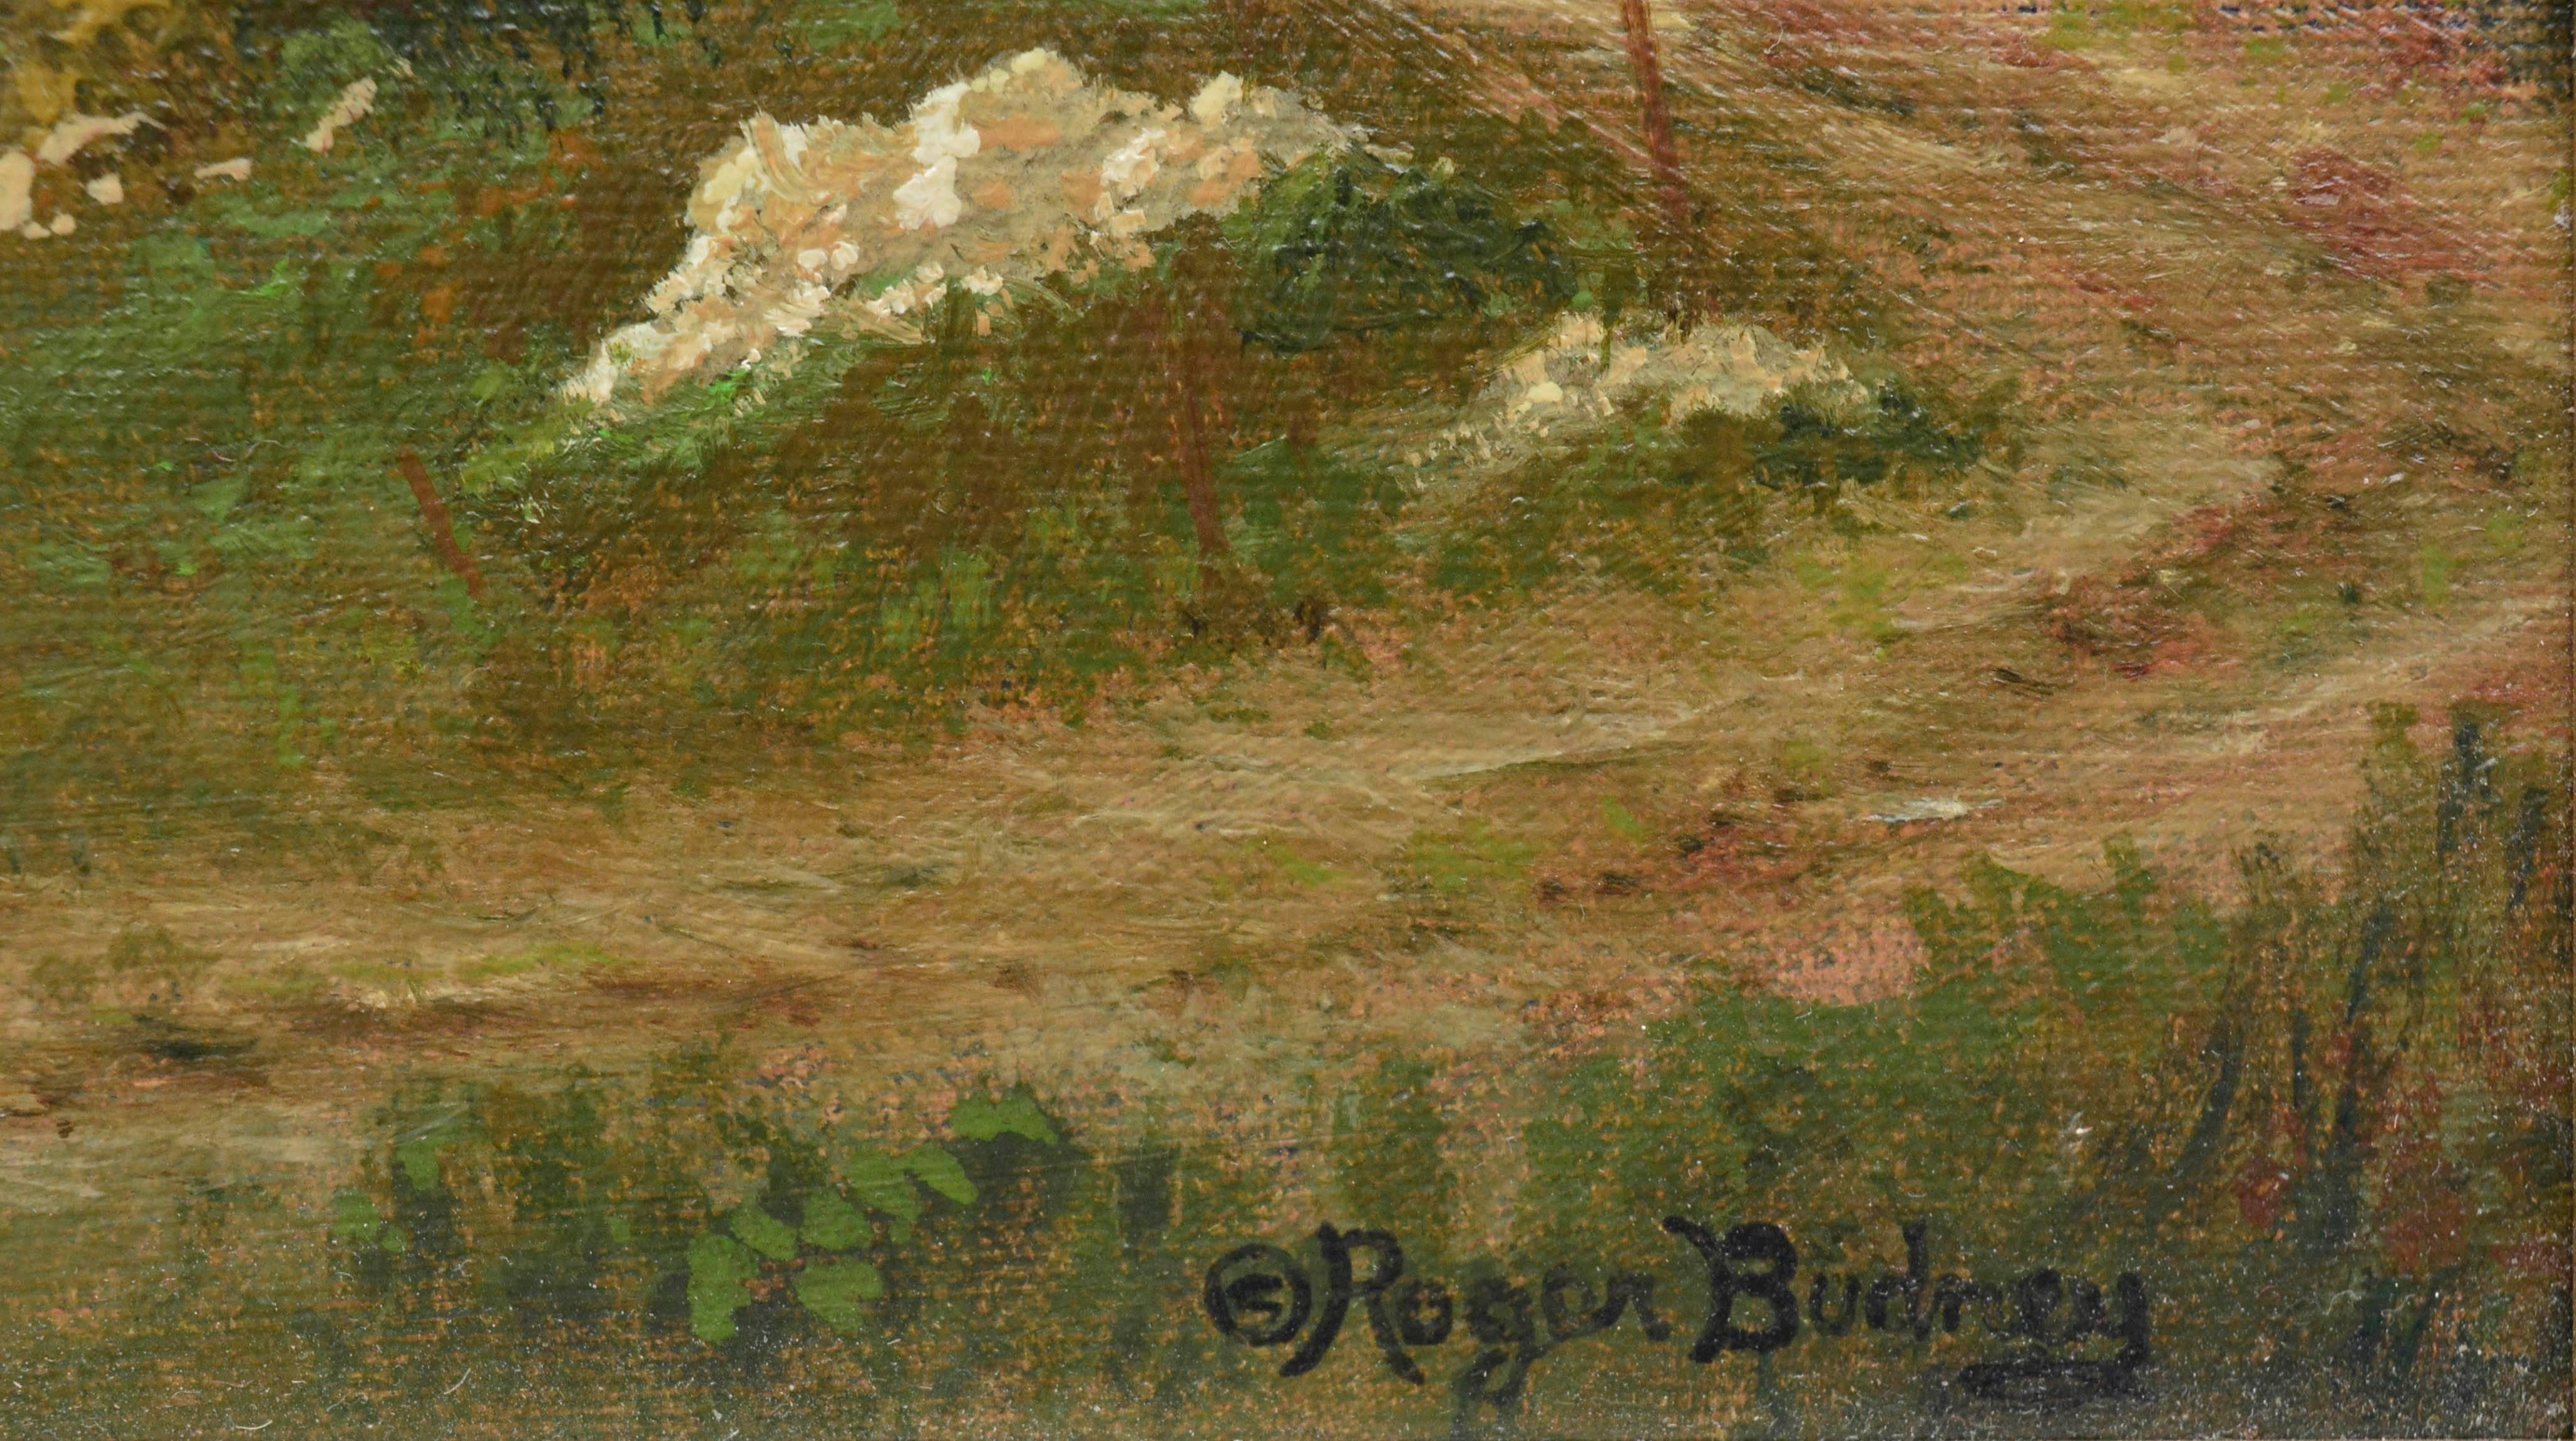 Kalifornien Grüne Landschaften (Braun), Landscape Painting, von Roger Budney